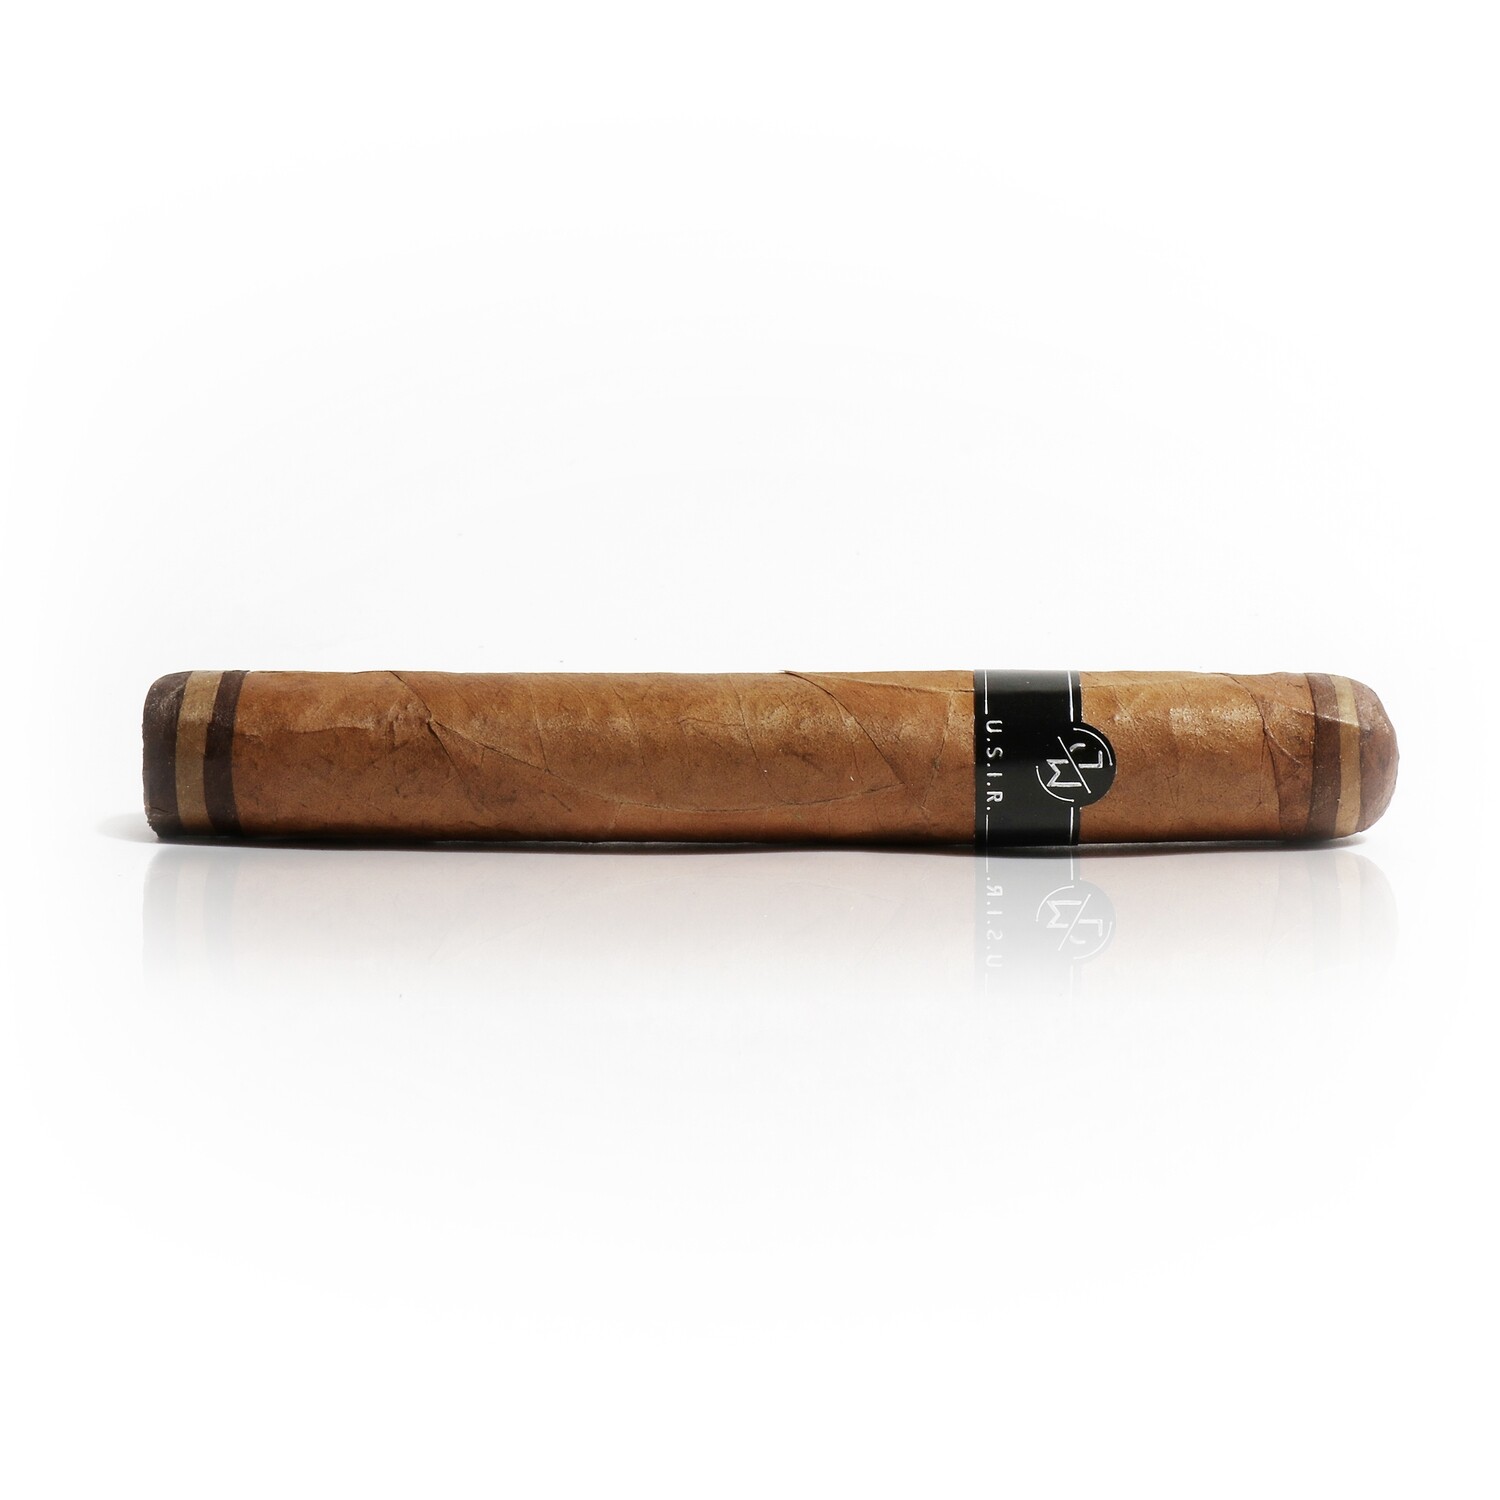 Jake Wyatt U.S.I.R. Toro 6 x 54 Single Cigar